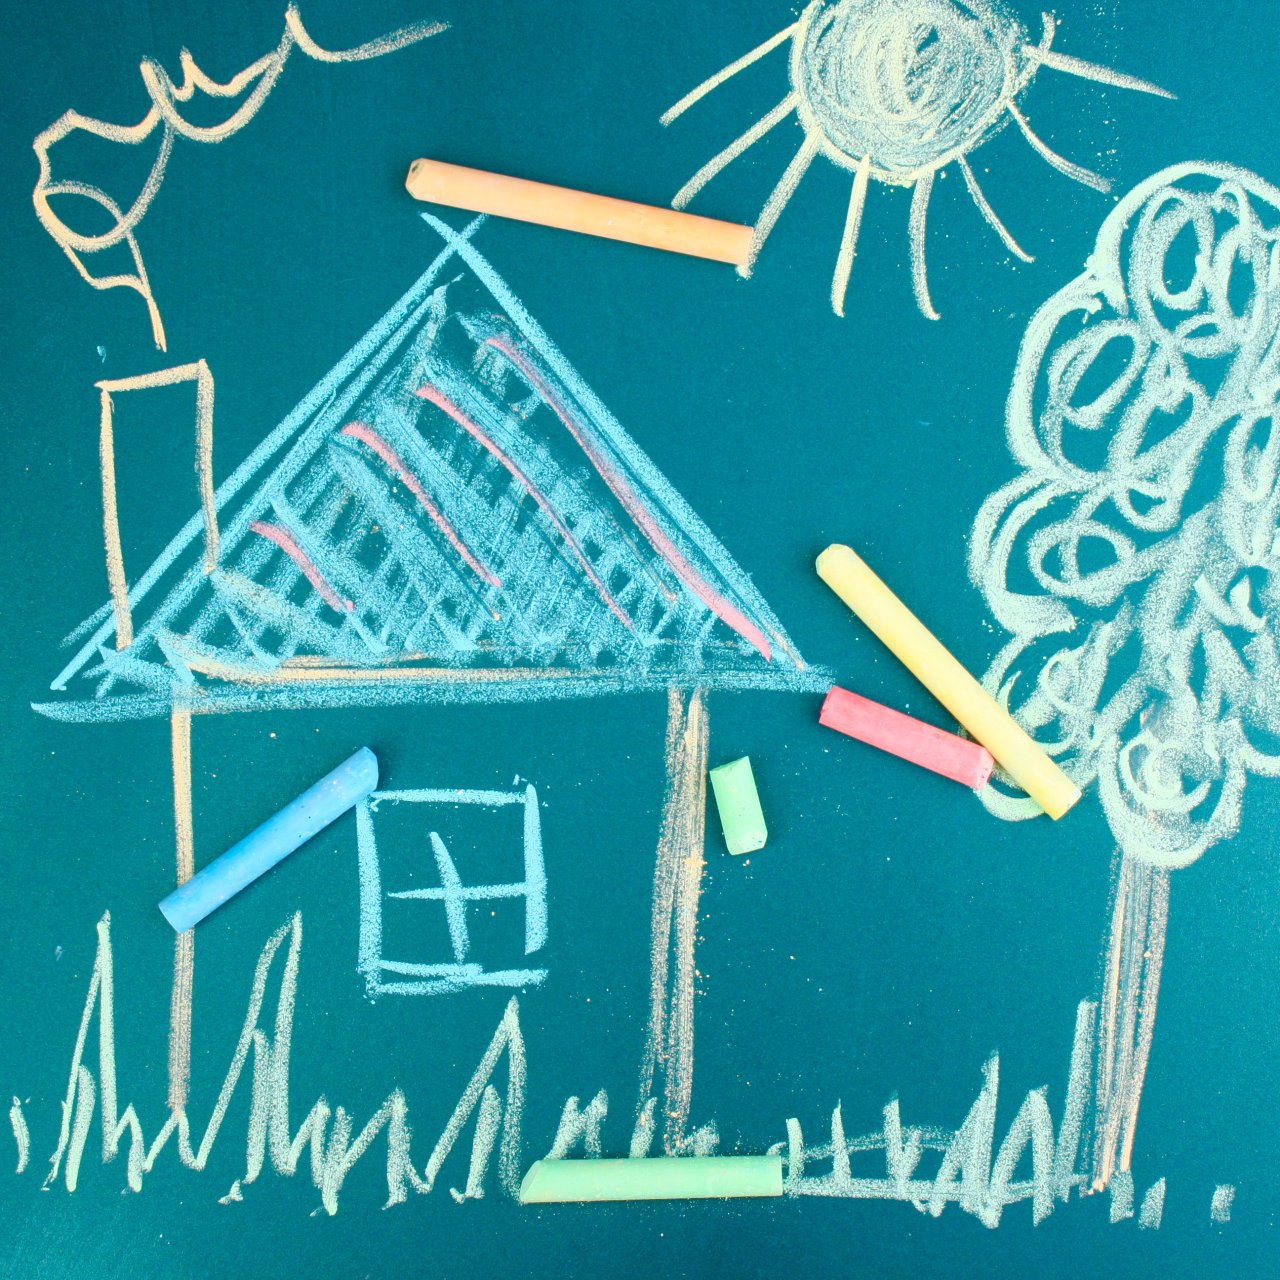 Bild auf einer Tafel, mit Kreide wurde ein Haus mit Kamin, Baum, eine Sonne gemalt. 